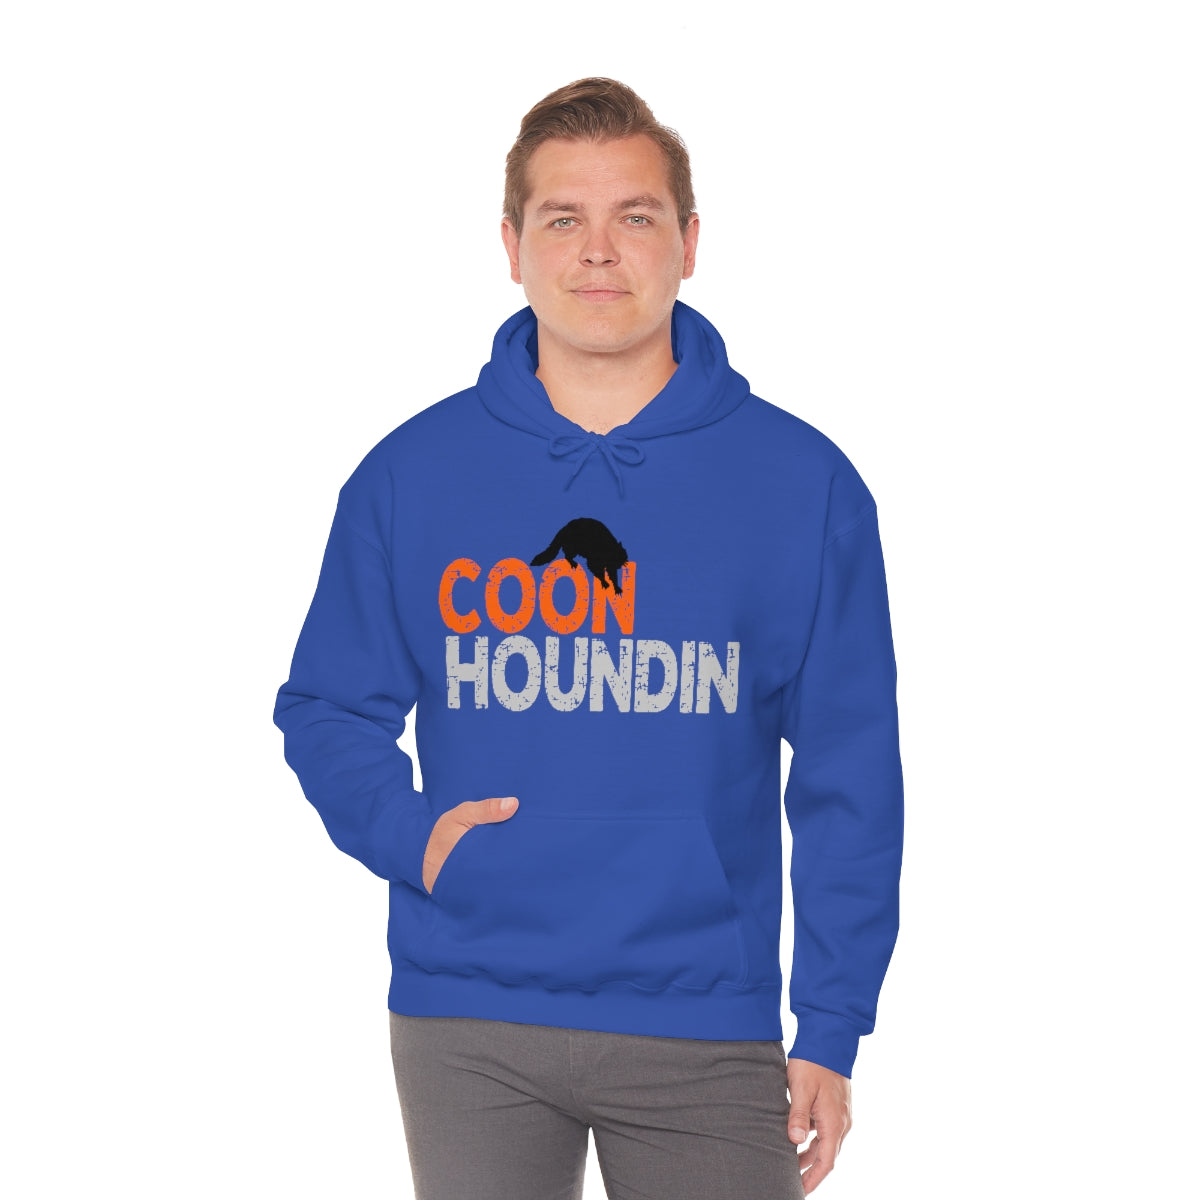 Coon Houndin Unisex  Hooded Sweatshirt